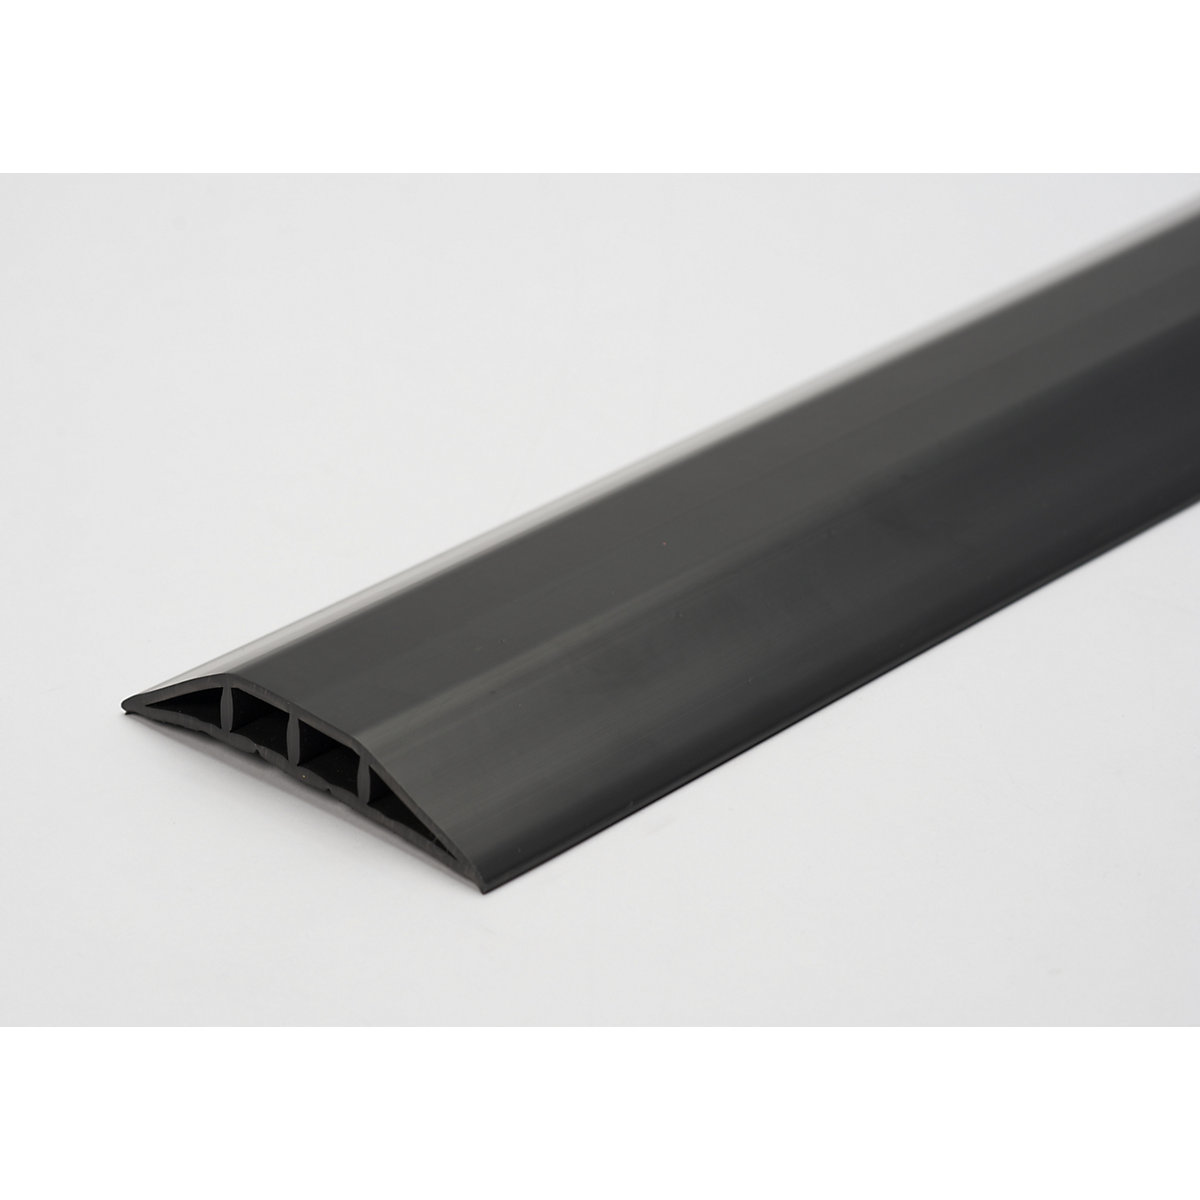 Plastový kabelový můstek, pro kabely a hadice do Ø 10 mm, černý, 2 komory, délka 1,5 m